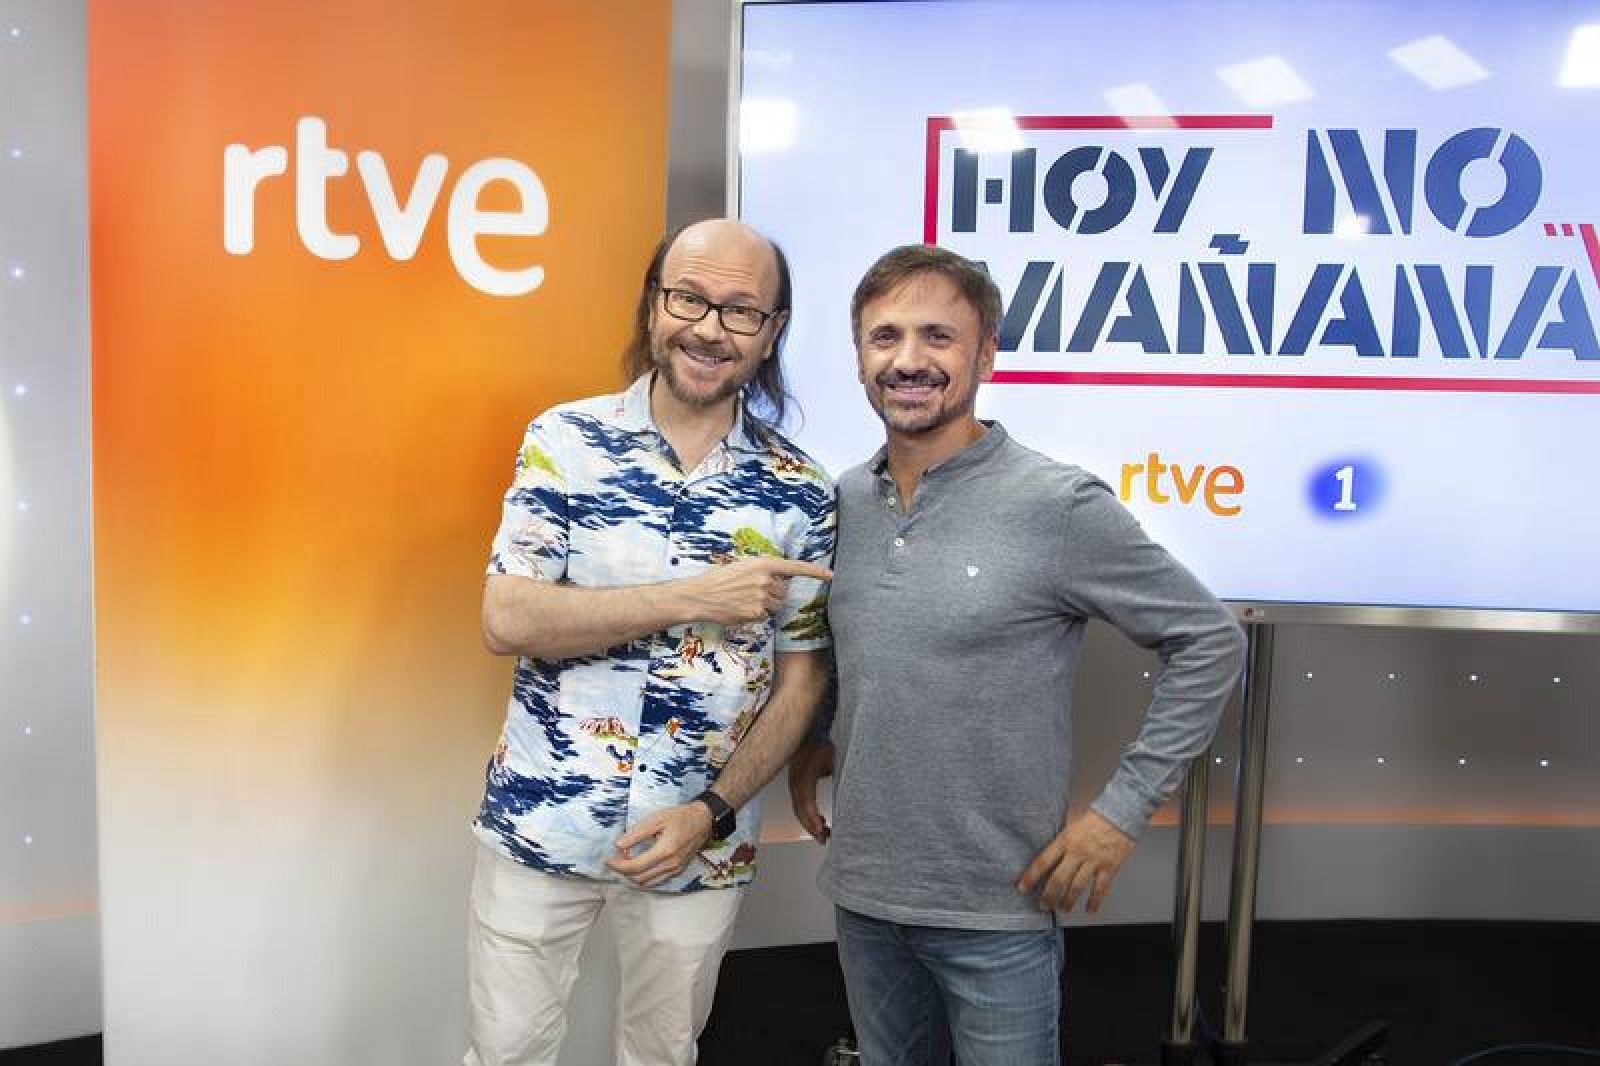 Hoy no, mañana - José Mota y Santiago Segura presentan 'Hoy no, mañana' - rtve.es